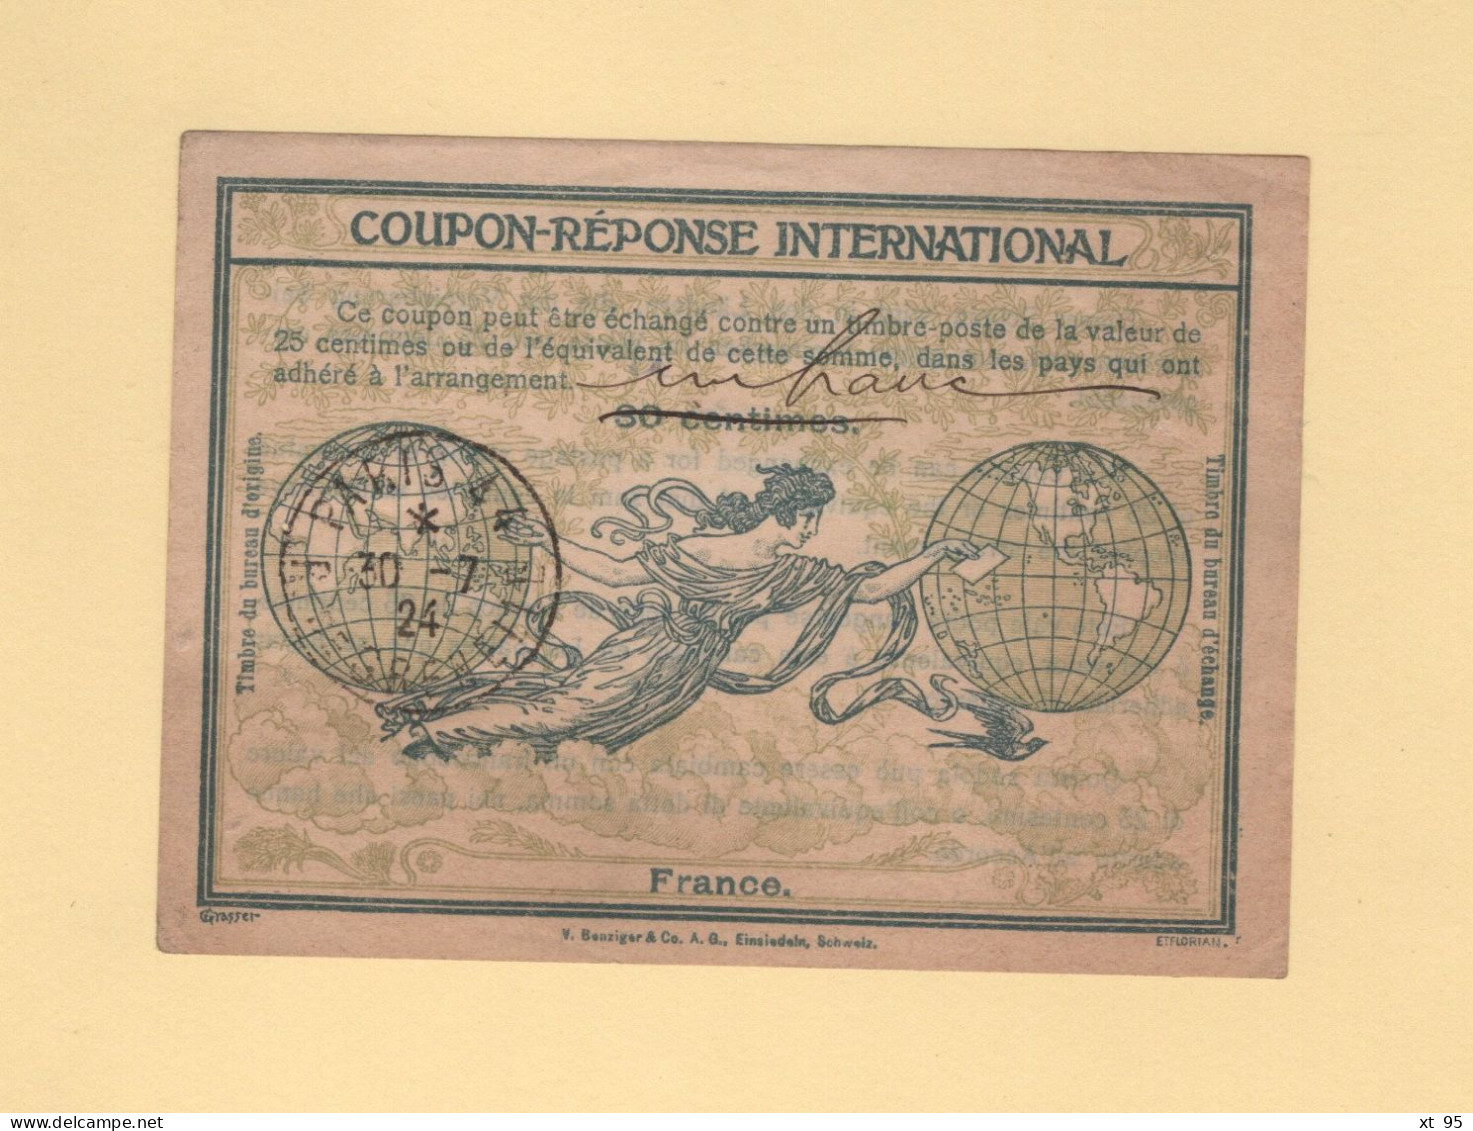 Coupon Reponse International - Surcharge Un Franc Manuscrite - Paris - 1924 - Coupons-réponse